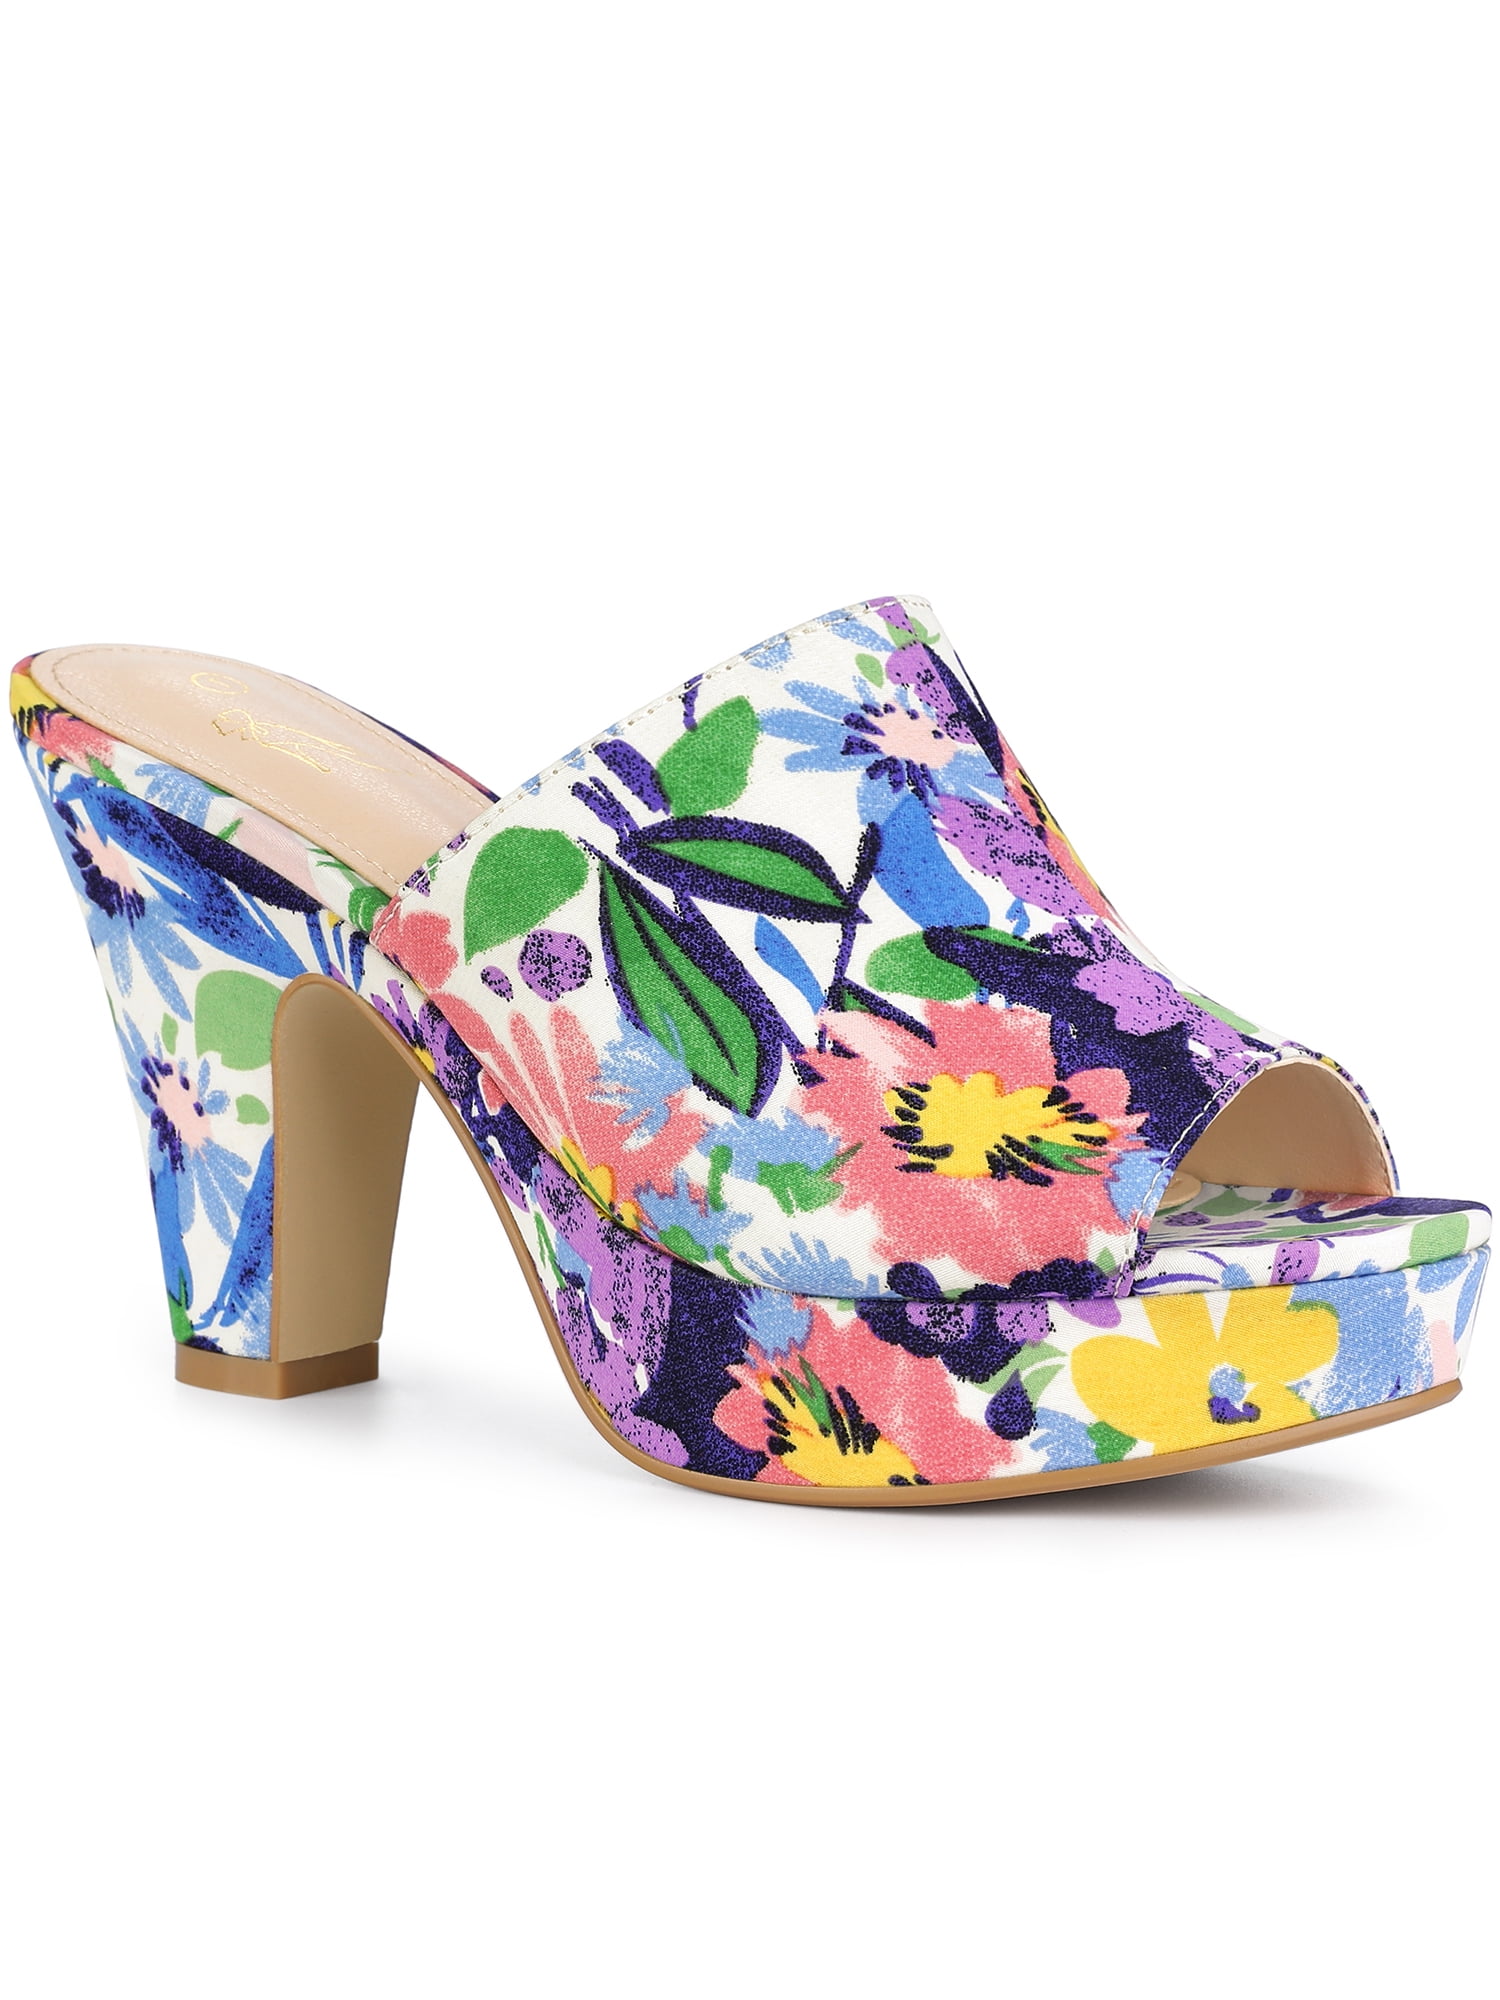 Perphy Platform Sandals Floral Chunky Heels Slides Sandals for Women ...